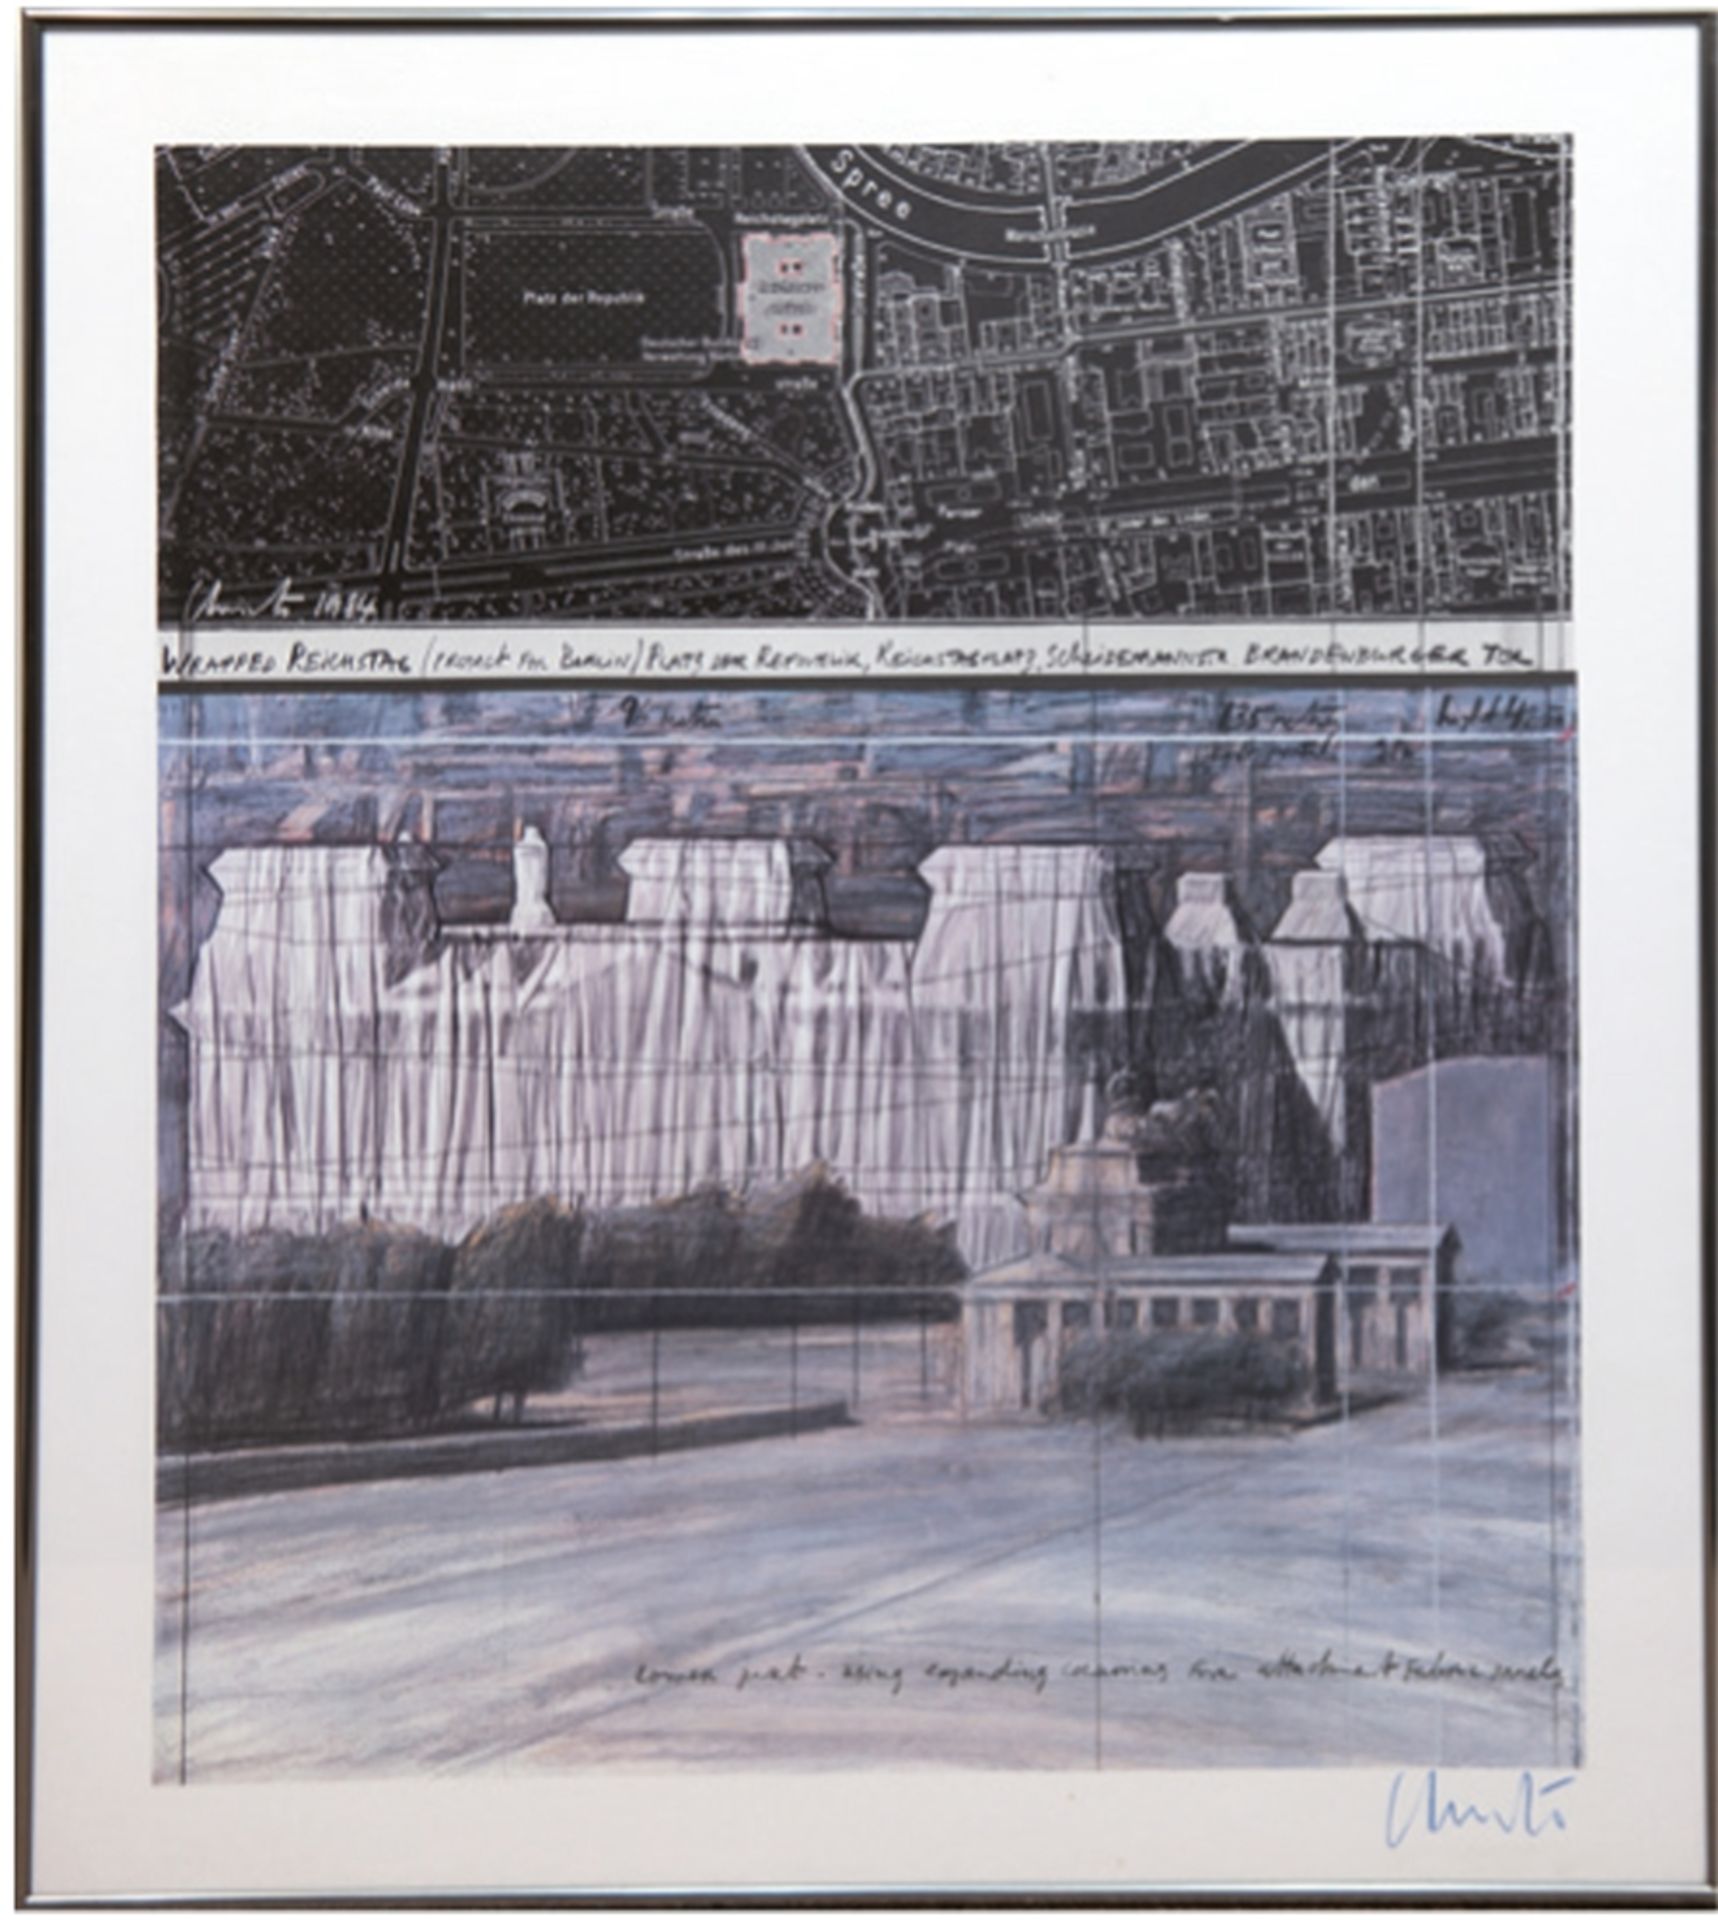 Christo (1935-2002) "Wrapped Reichstag (Project for Berlin), Platz der Republik, Reichstagplatz, Br